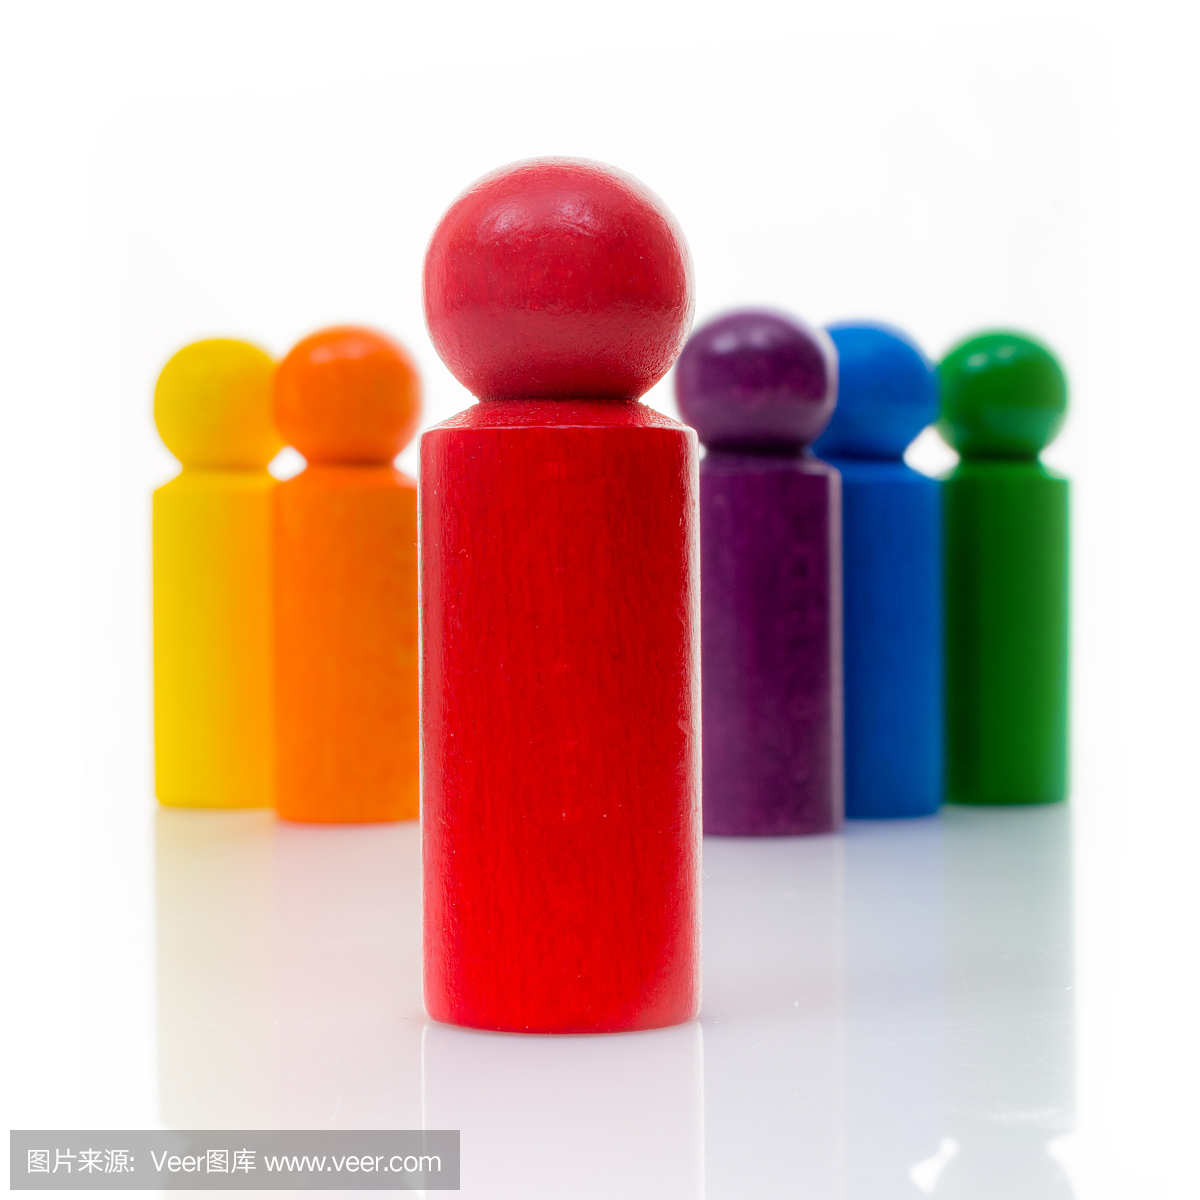 红色领导人Pawn与它的彩虹色的团队